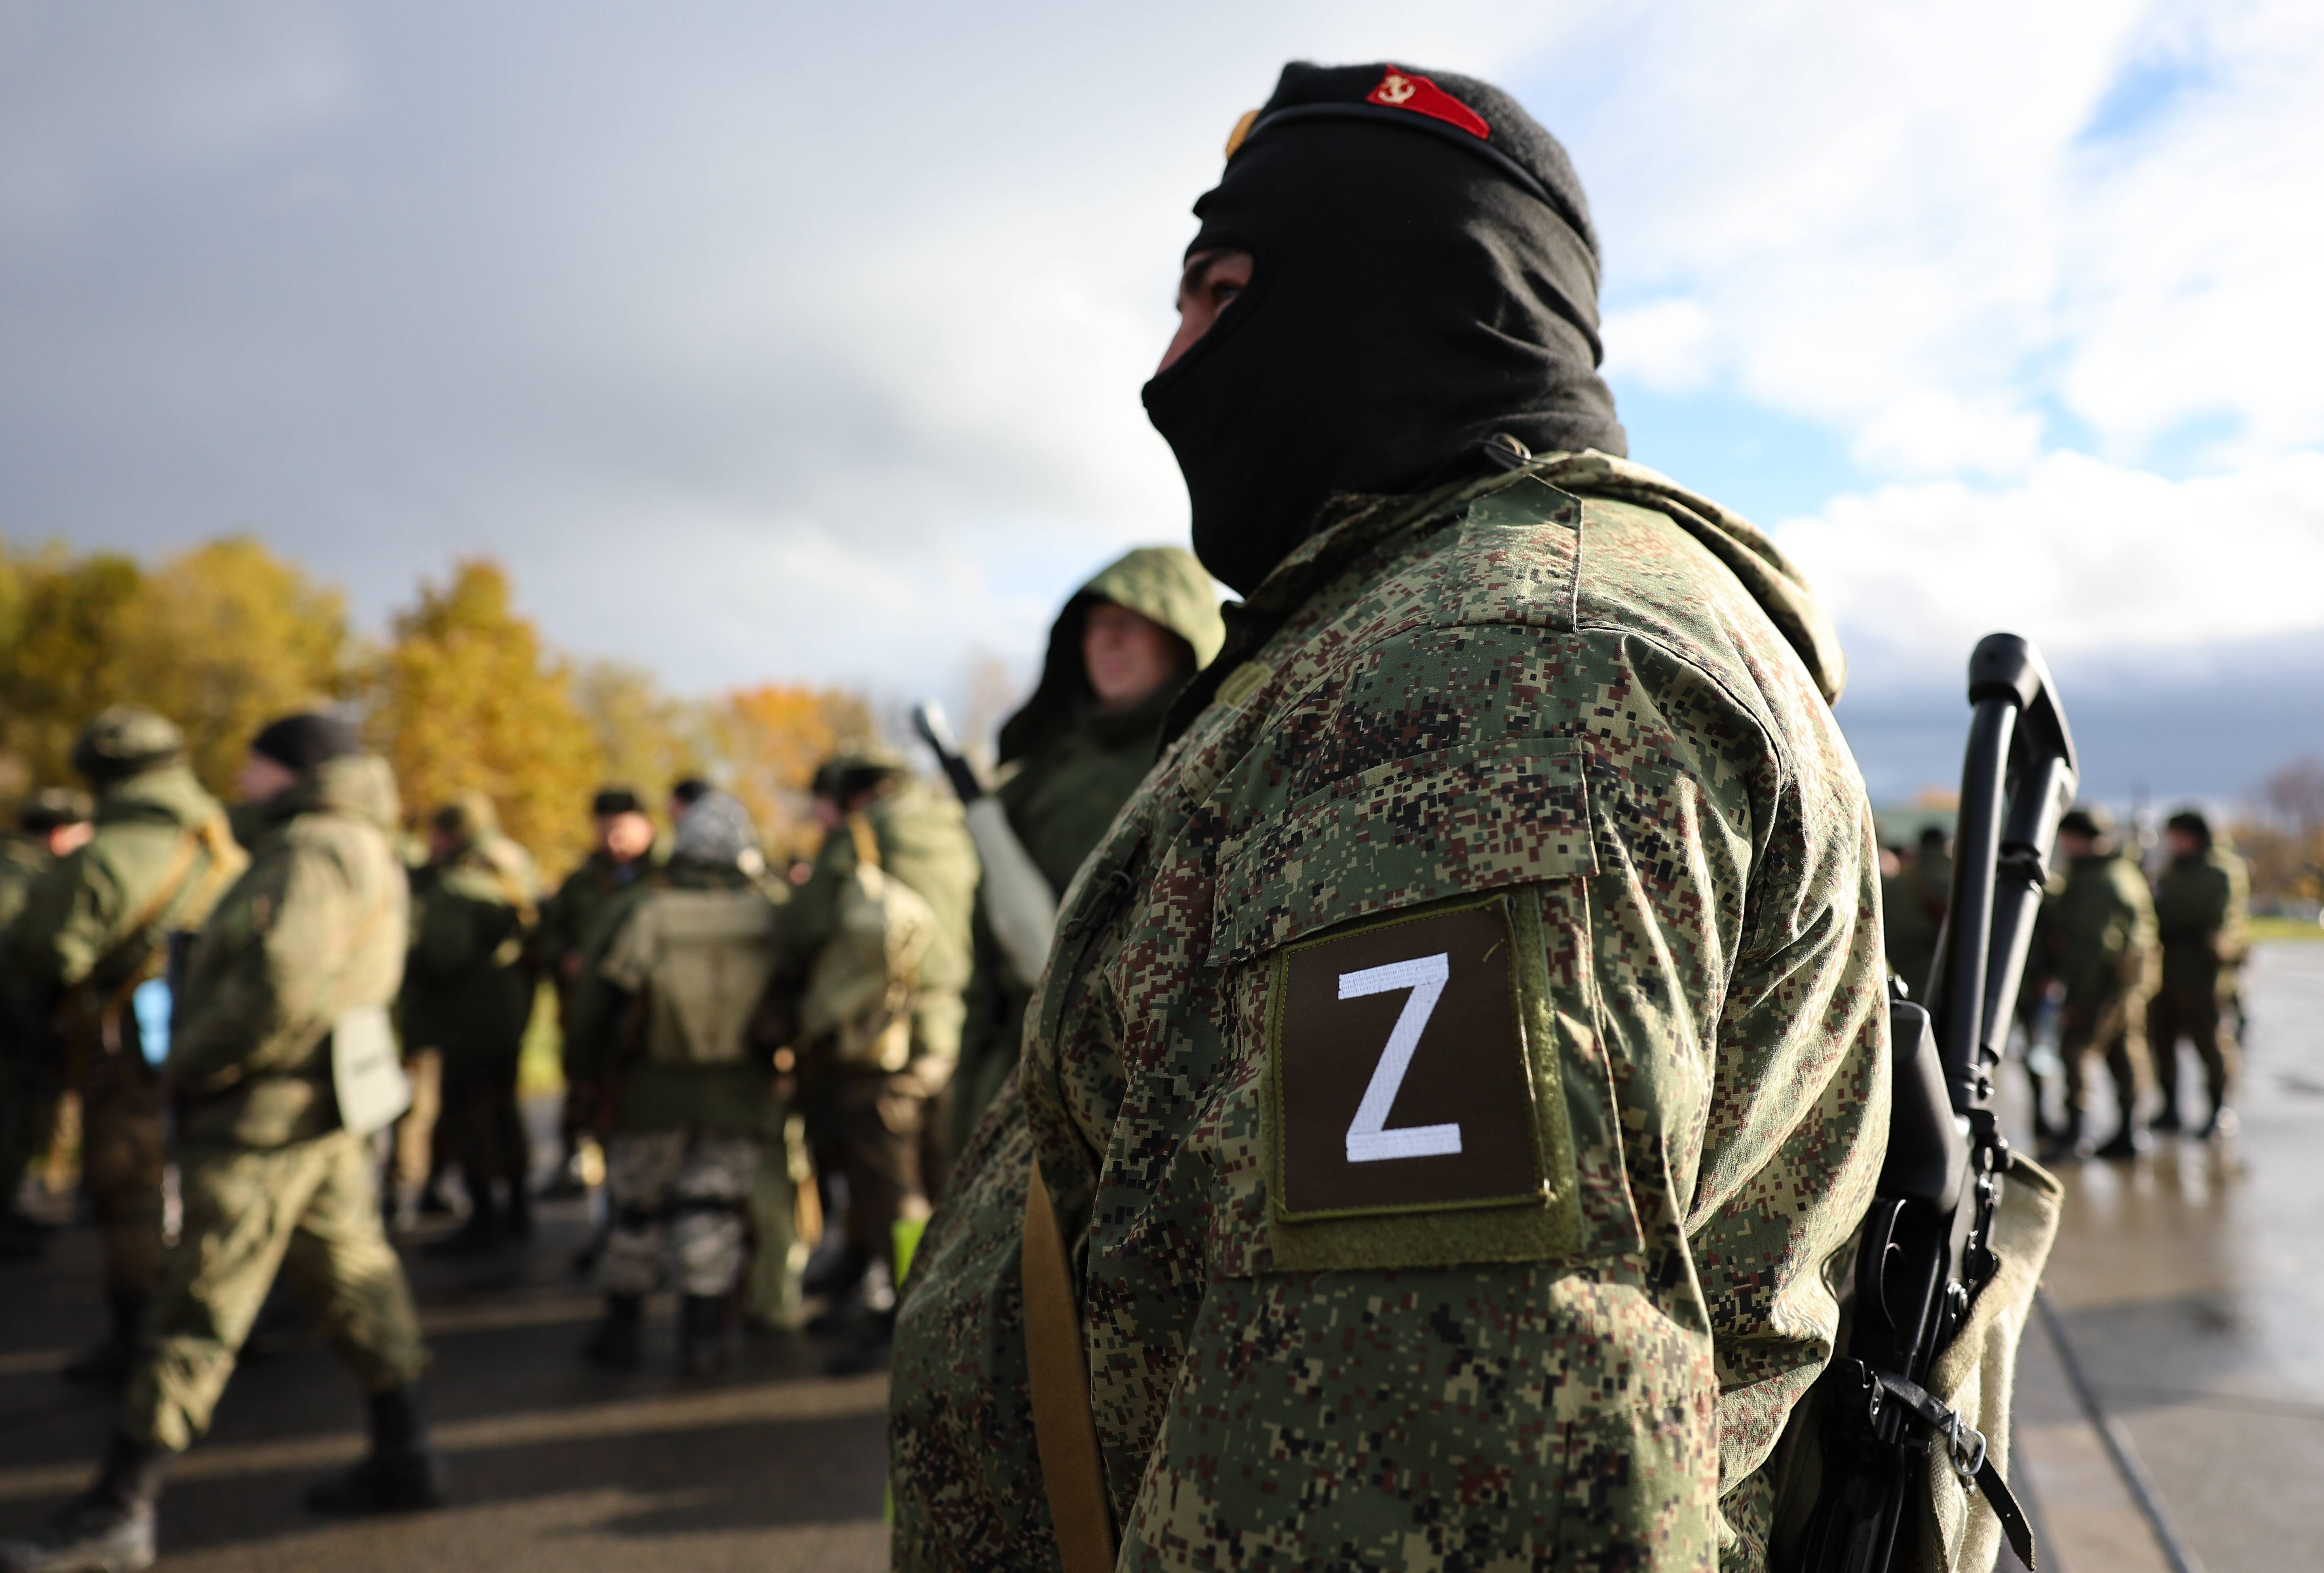 Exekution bei Befehlsverweigerung! Russische Kommandeure gnadenlos im Ukraine-Krieg